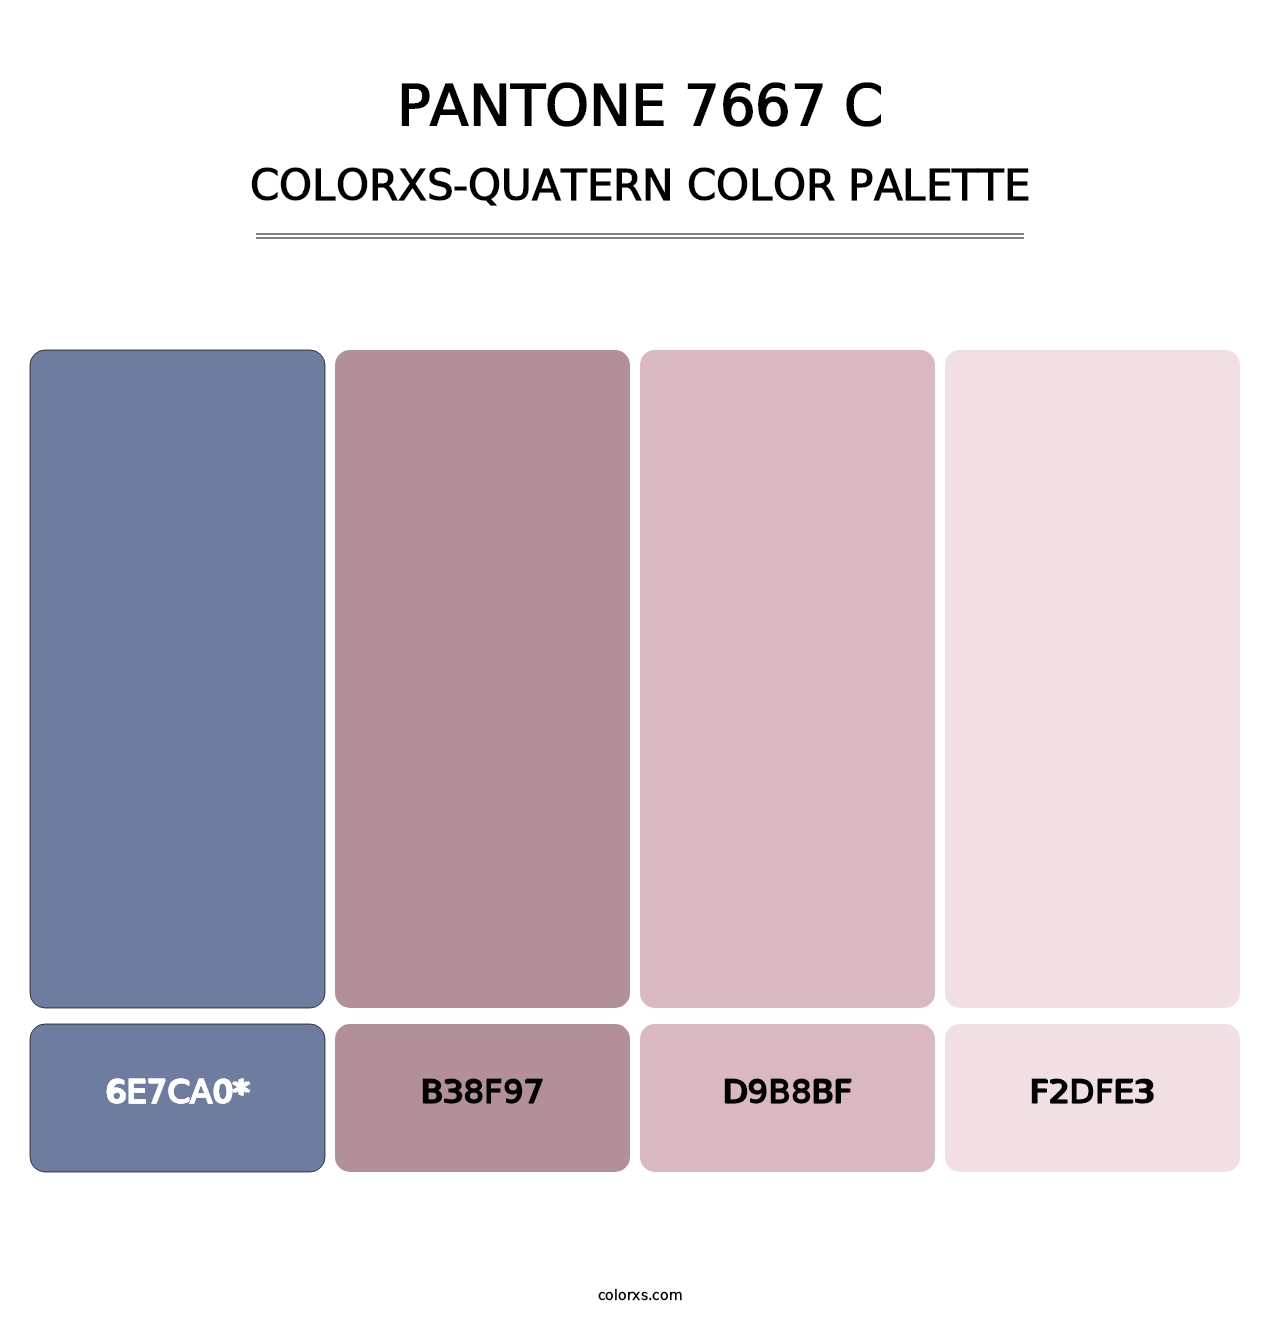 PANTONE 7667 C - Colorxs Quatern Palette